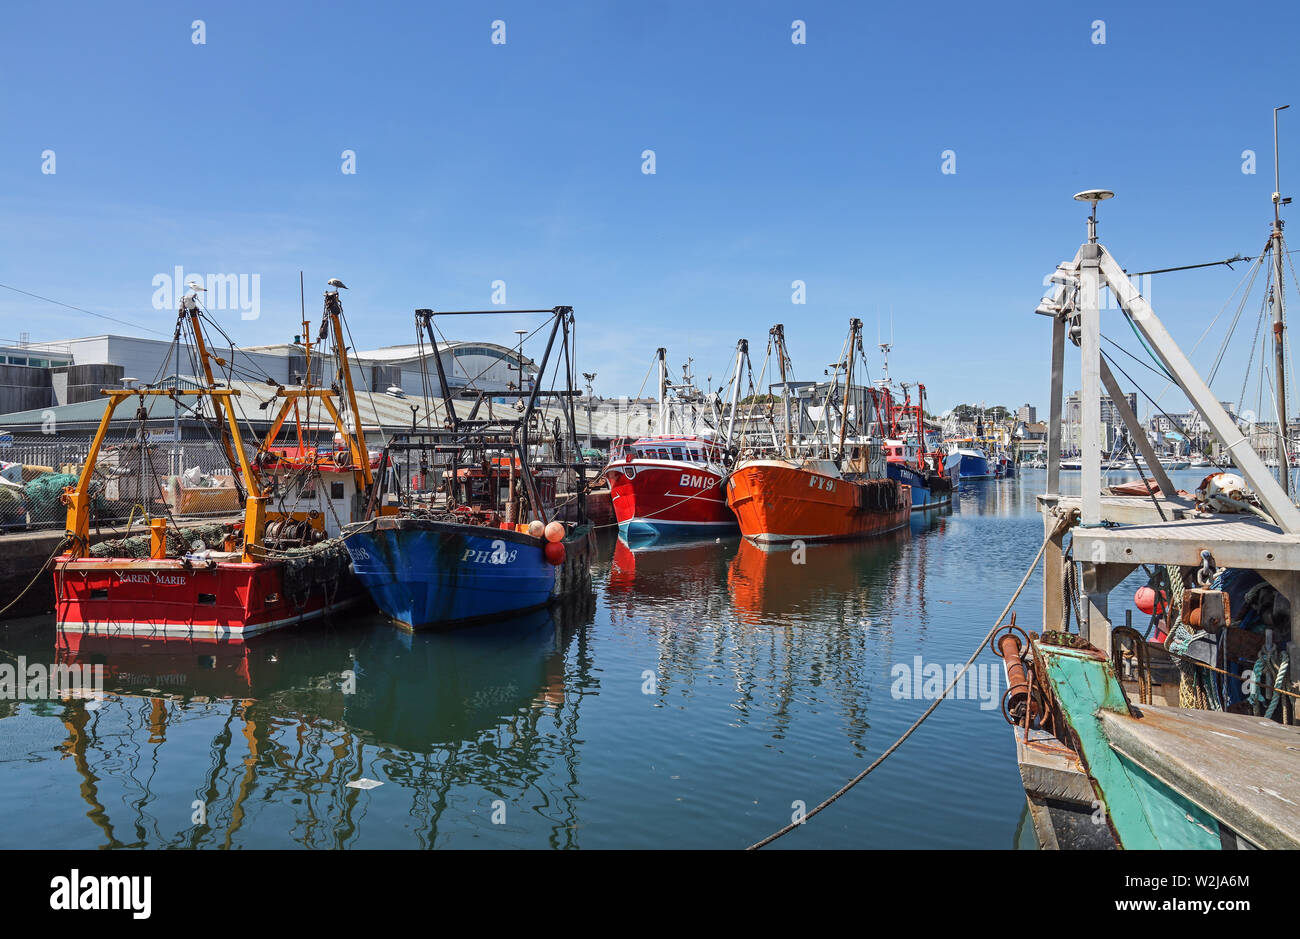 Plymouth Sutton Harbour, bassin intérieur, bateaux de pêche colorés au repos dans un havre de paix. Banque D'Images